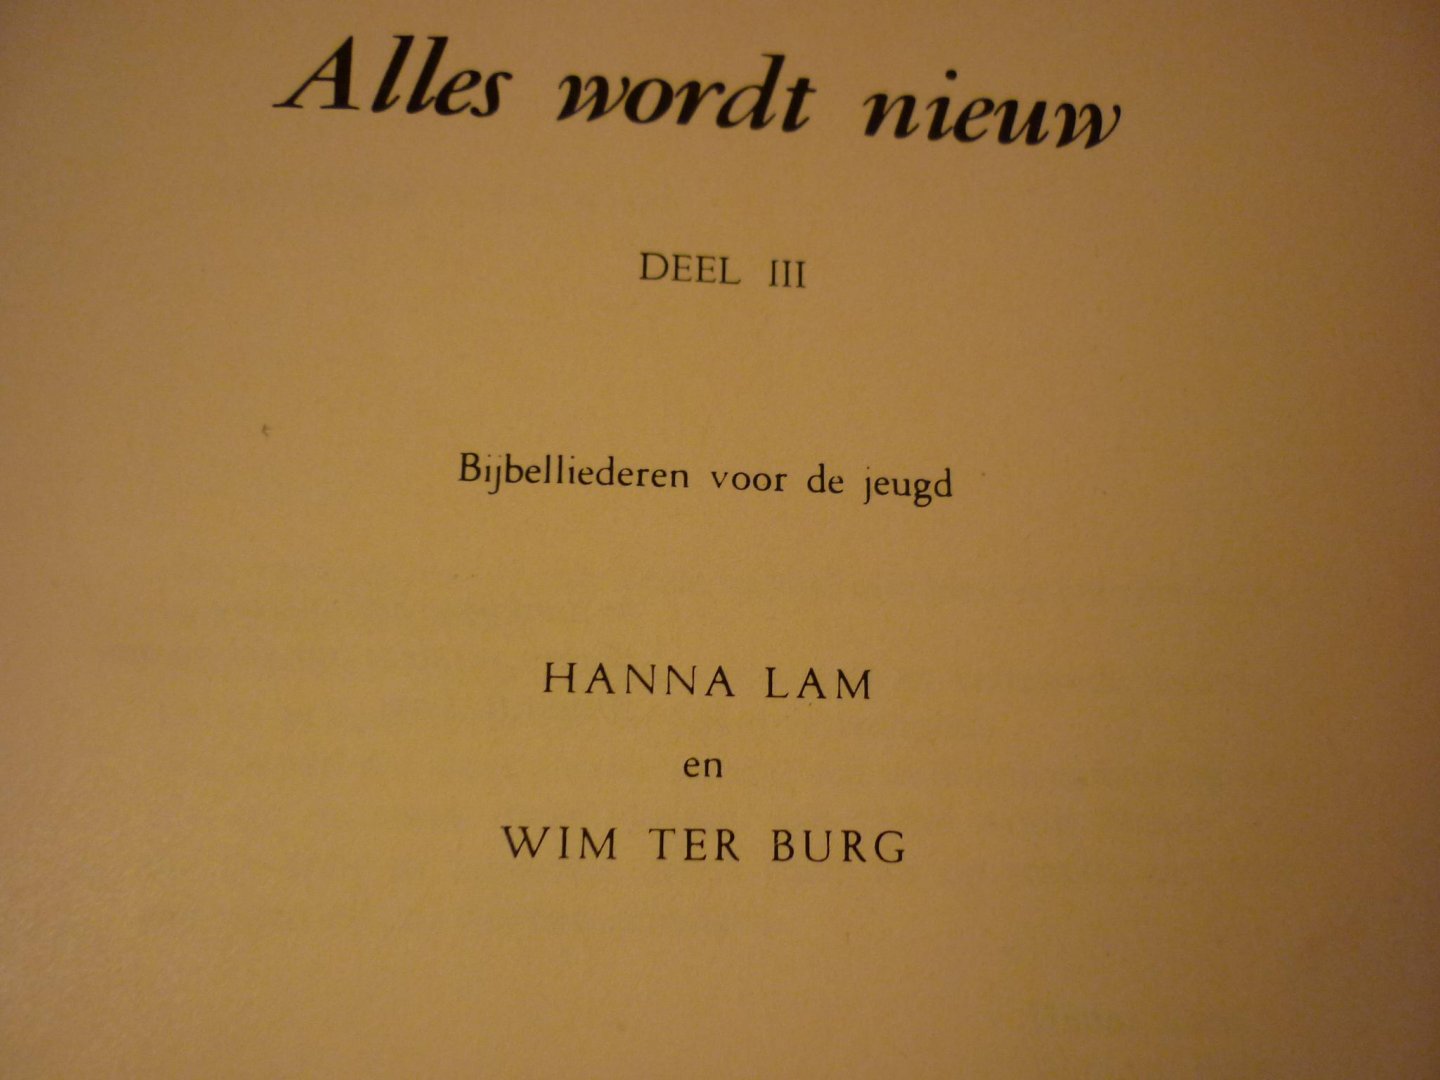 Lam; Hanna en Wim ter Burg - Alles wordt nieuw - Deel III (Klavarskribo)